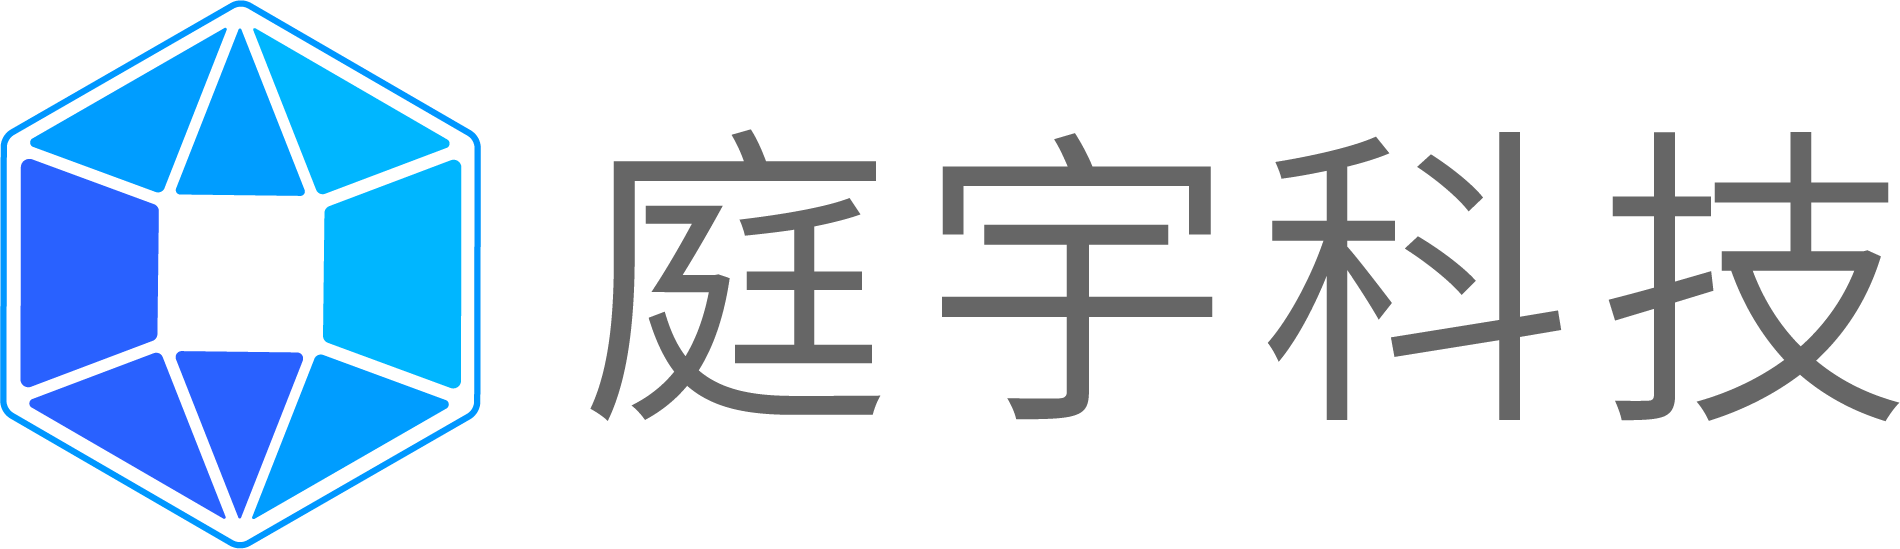 庭宇科技Logo